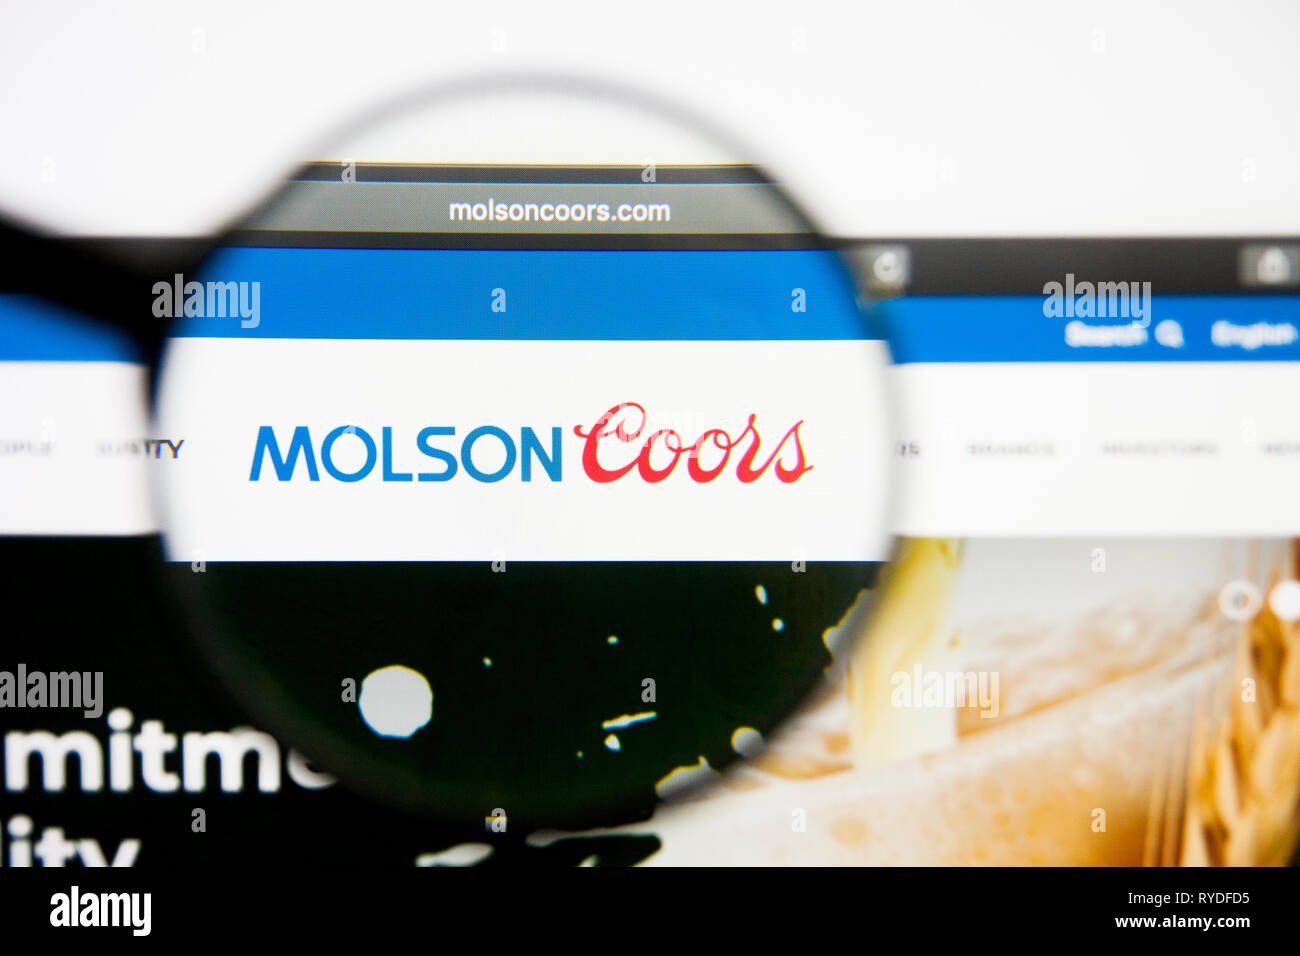 Los Angeles, Californie, USA - 28 Février 2019 : Molson Coors Brewing accueil du site. Molson Coors Brewing logo visible à l'écran, d'illustration Modifier Banque D'Images